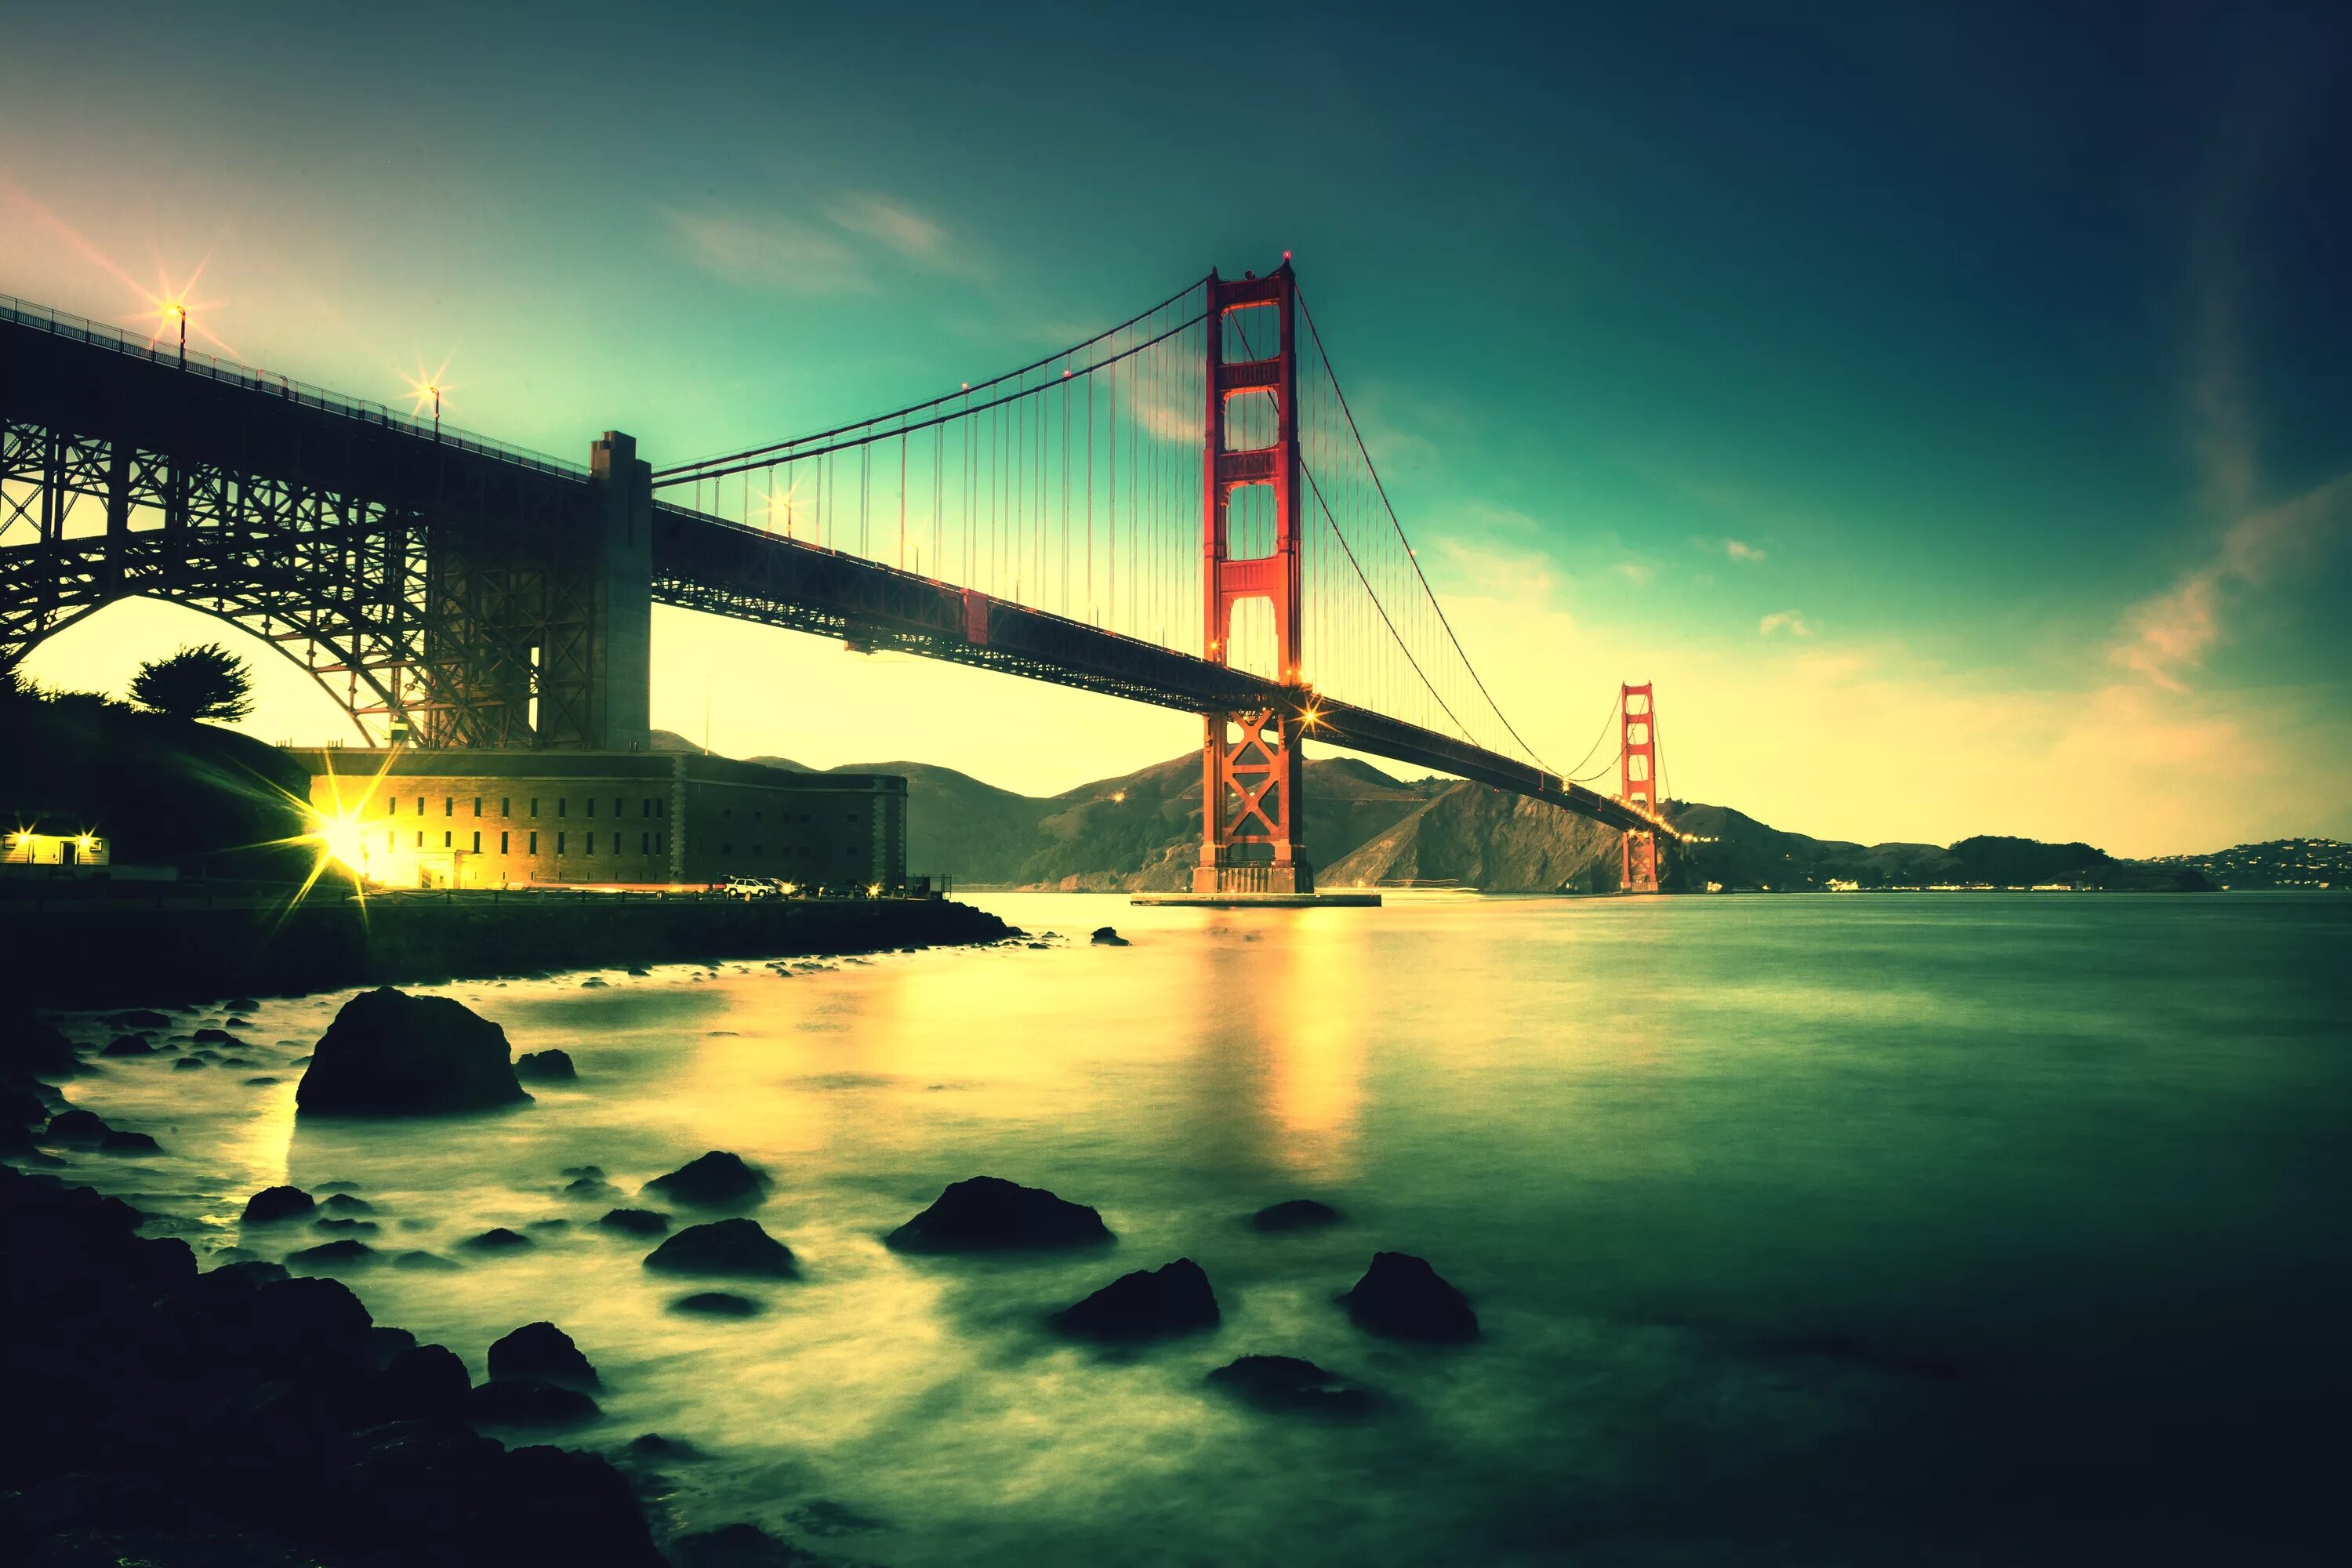 Обои на разрешение 1080 на 1080. Мост золотые ворота Сан-Франциско Калифорния. Мост Нью-Йорк мост Сан Франциско. Бруклинский мост Сан Франциско.